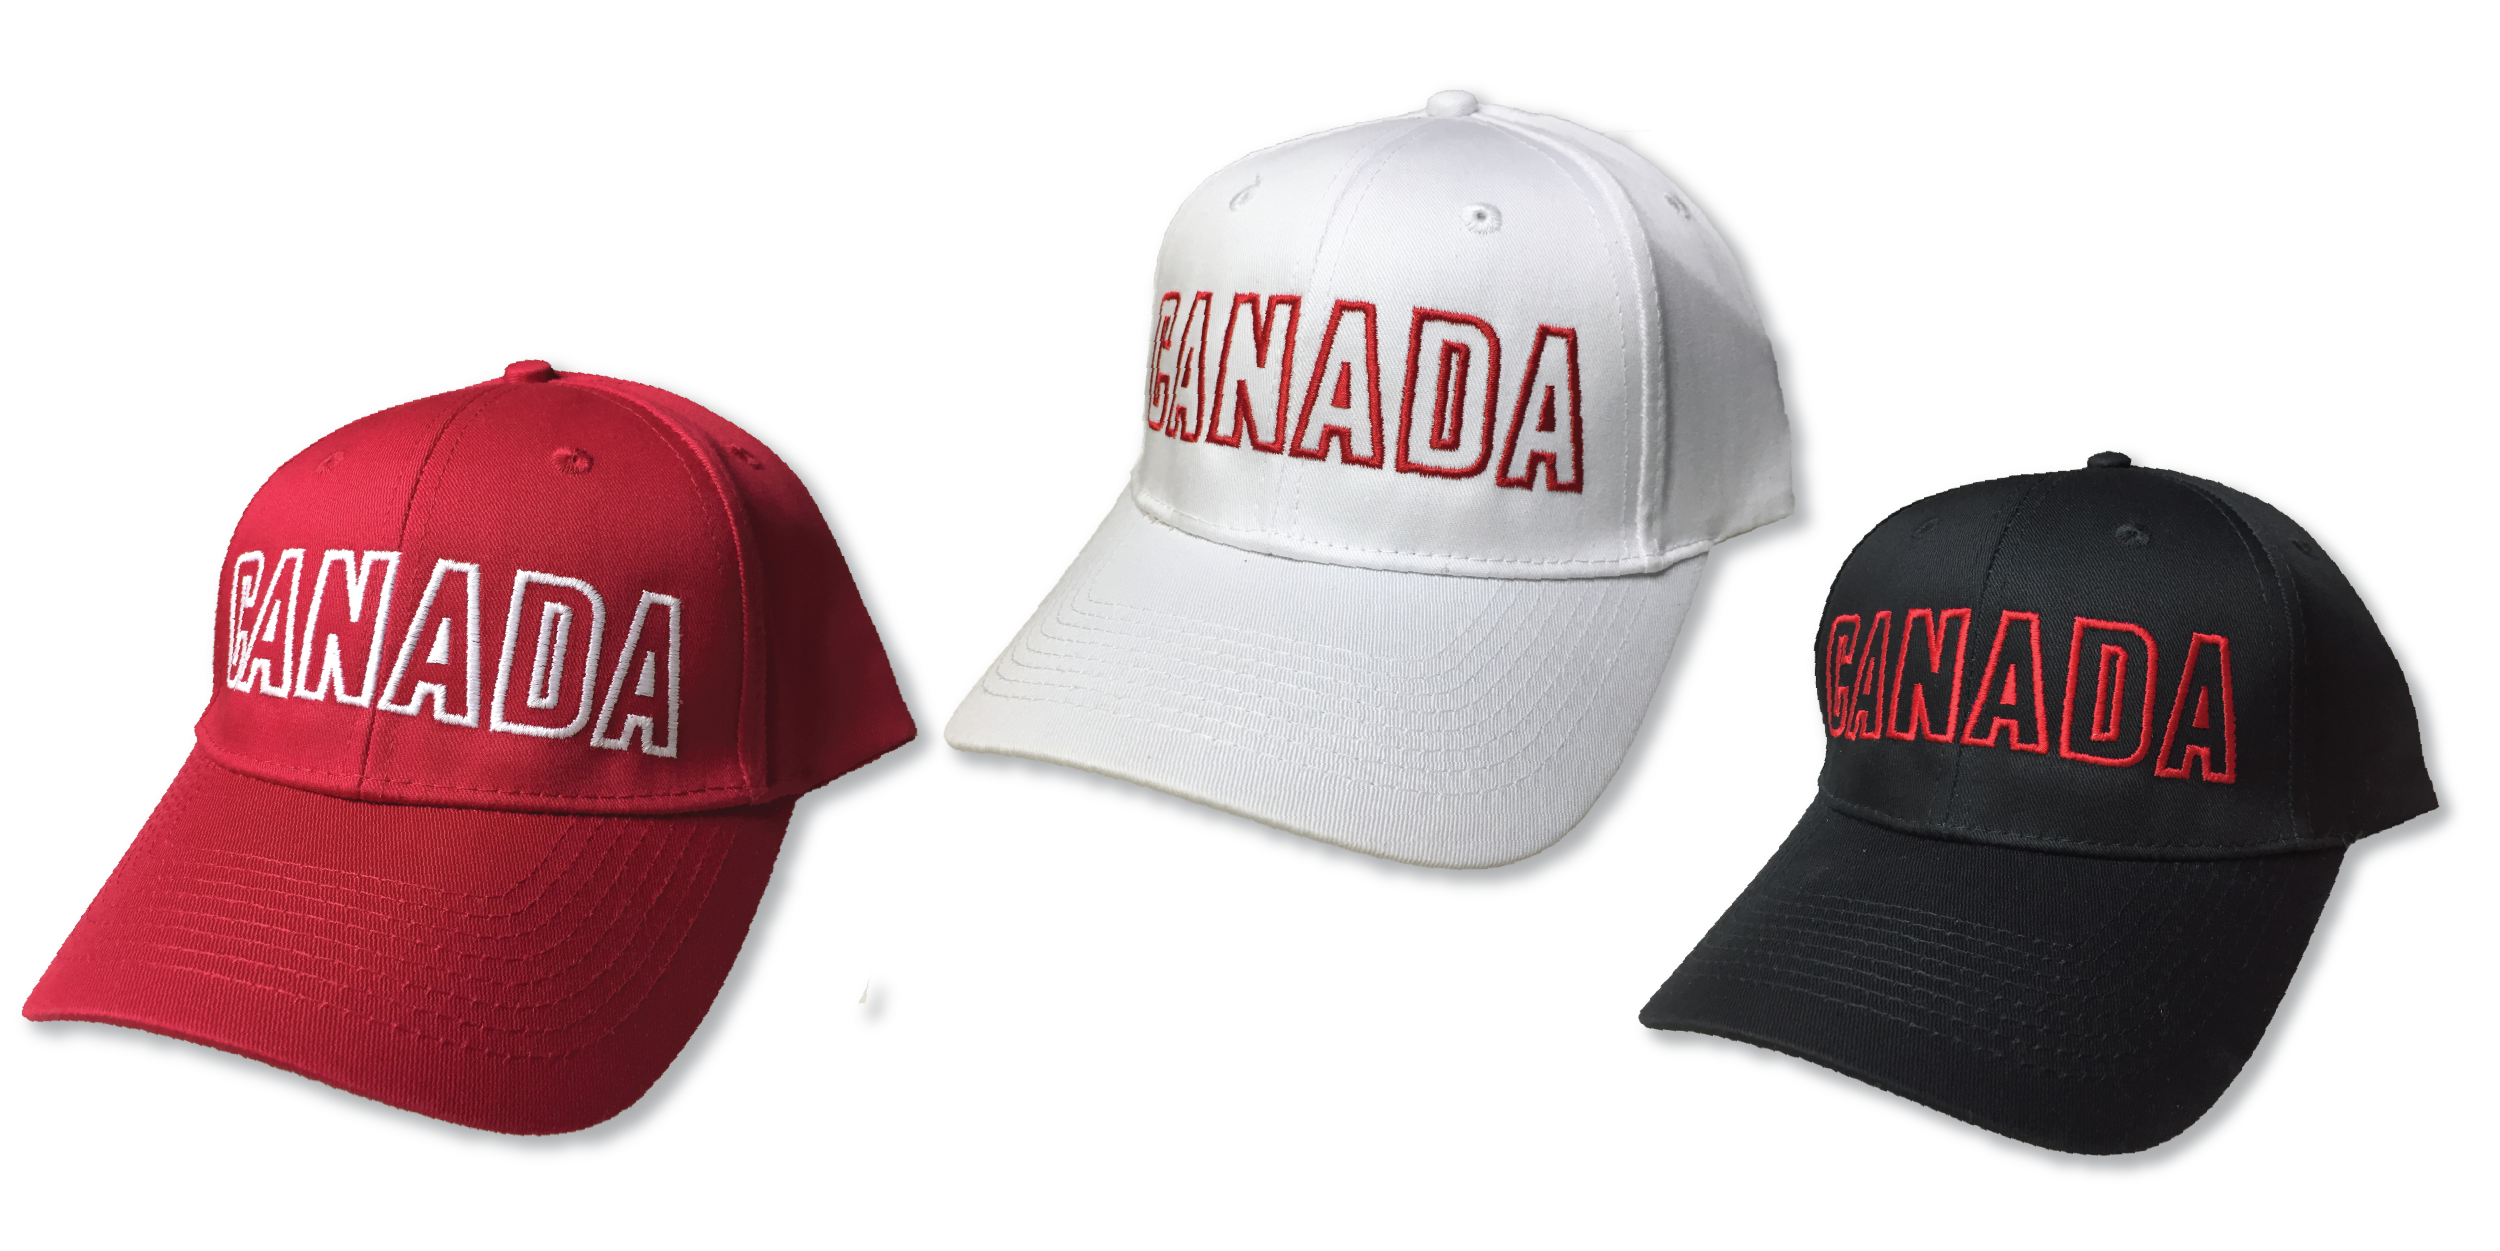 OCG CANADA BLOCK CAP